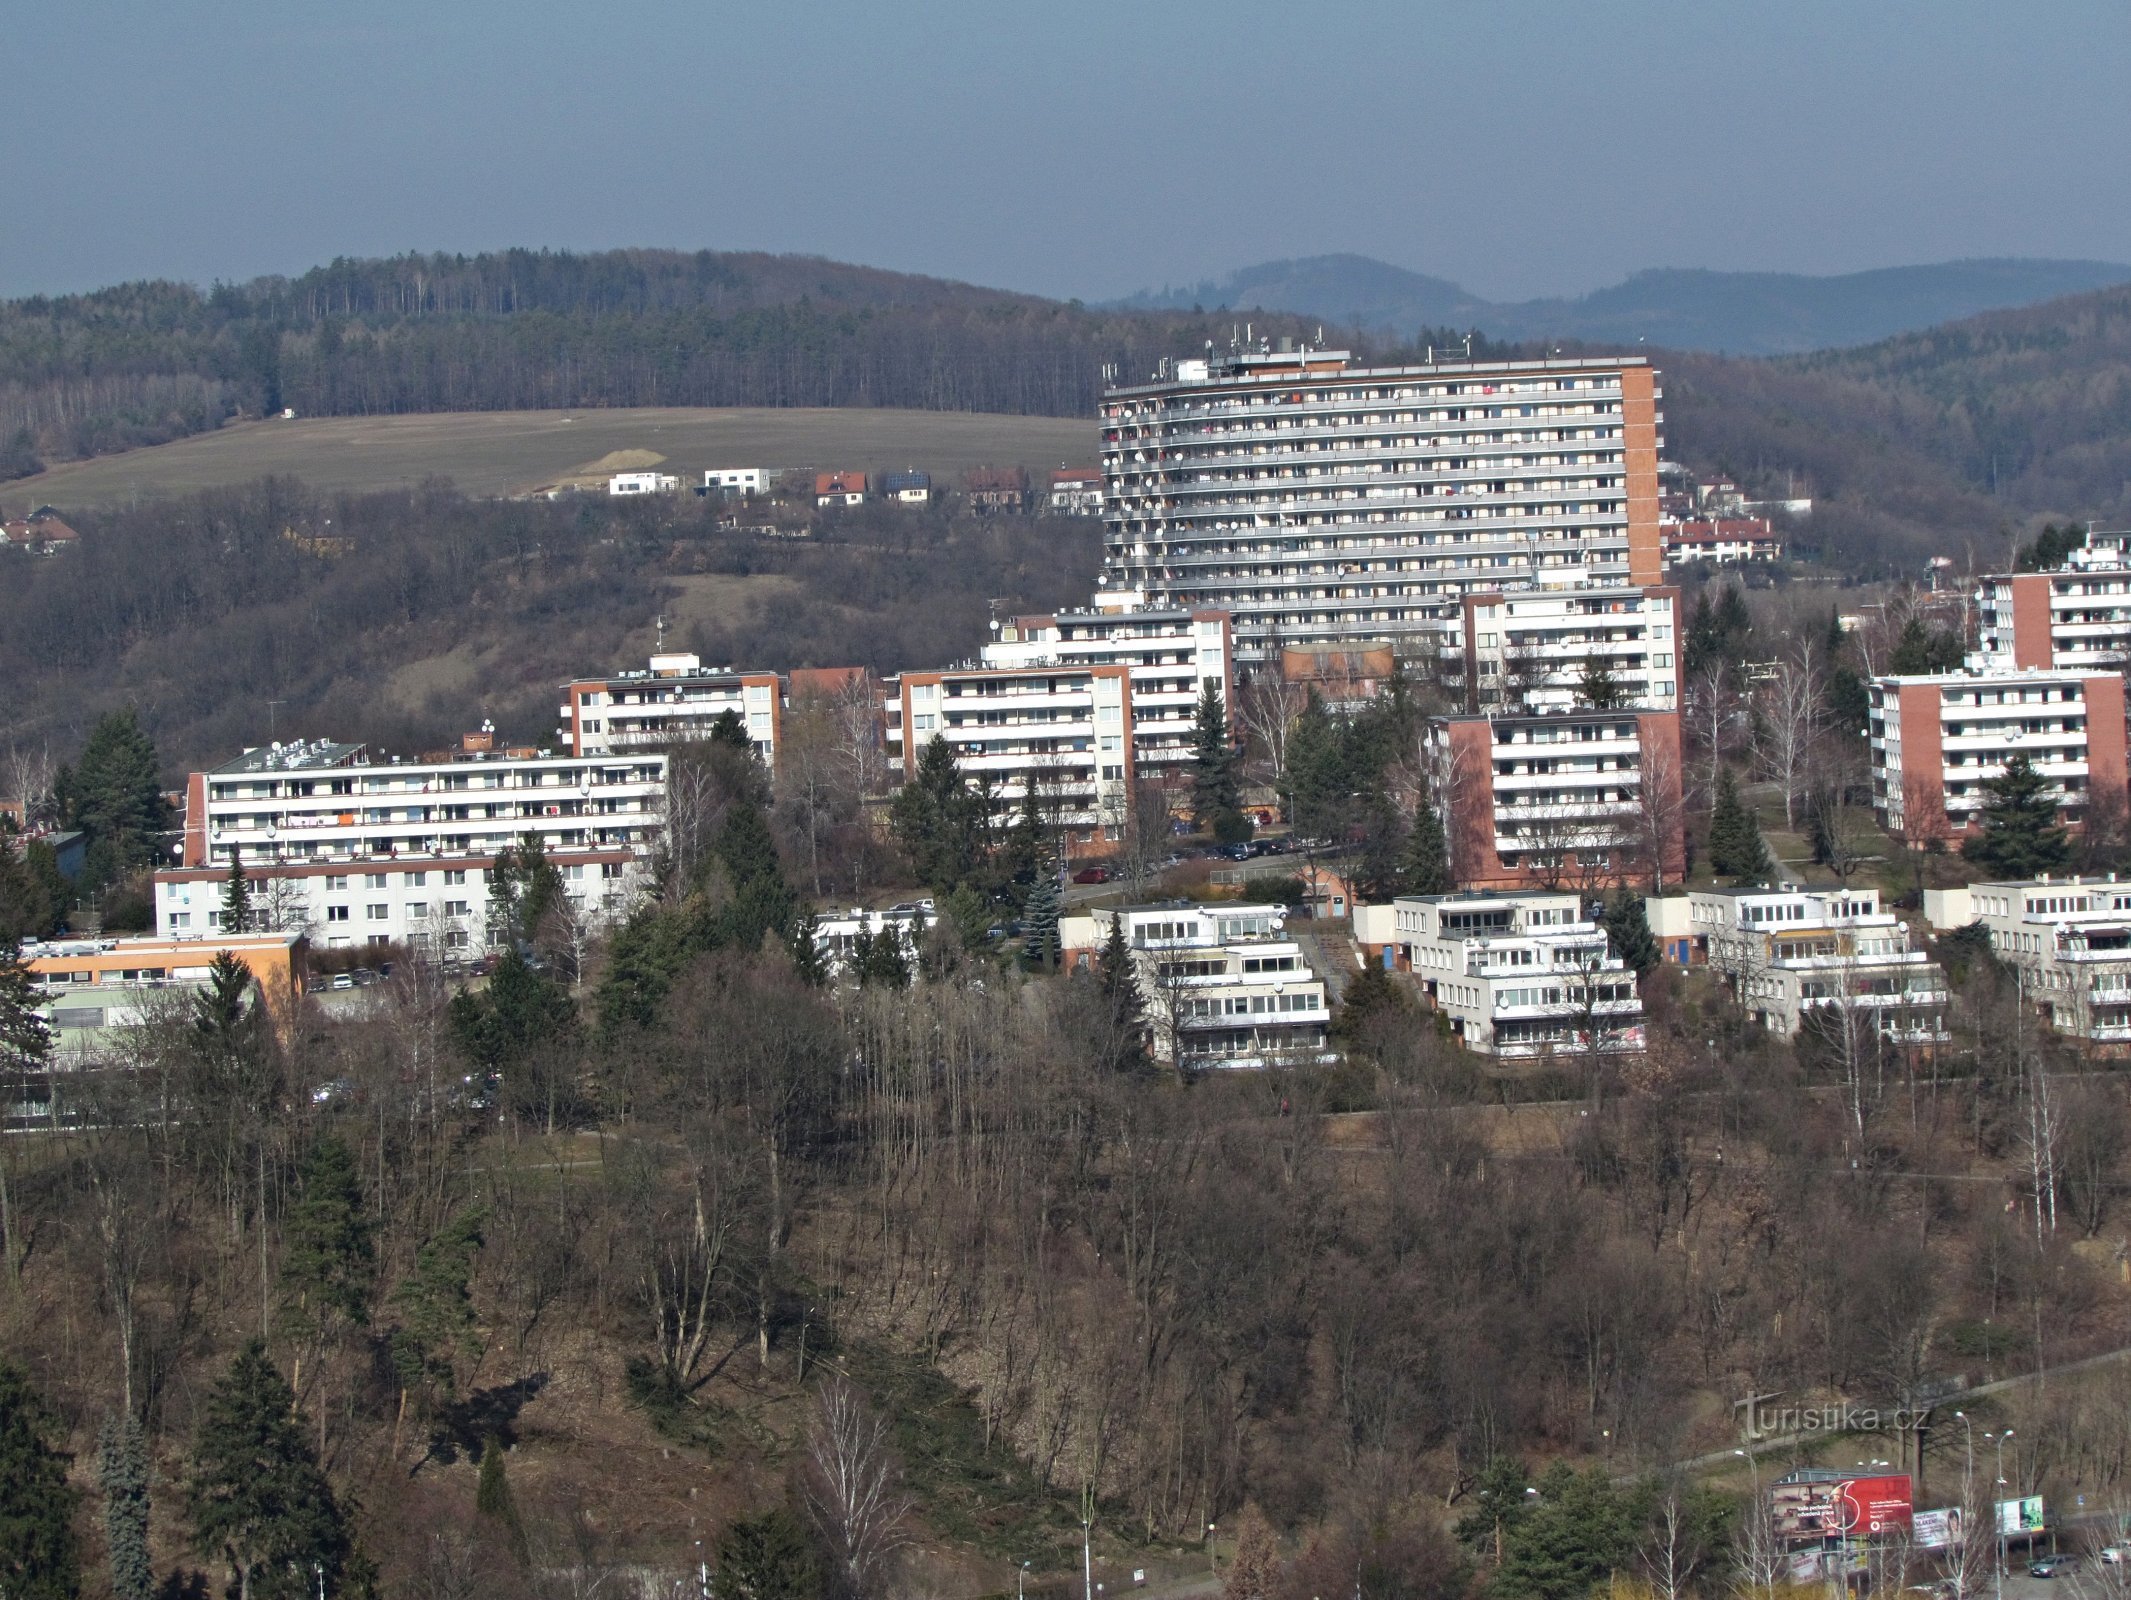 Một chuyến viếng thăm tòa nhà chọc trời và qua Barabáš đến Zlín